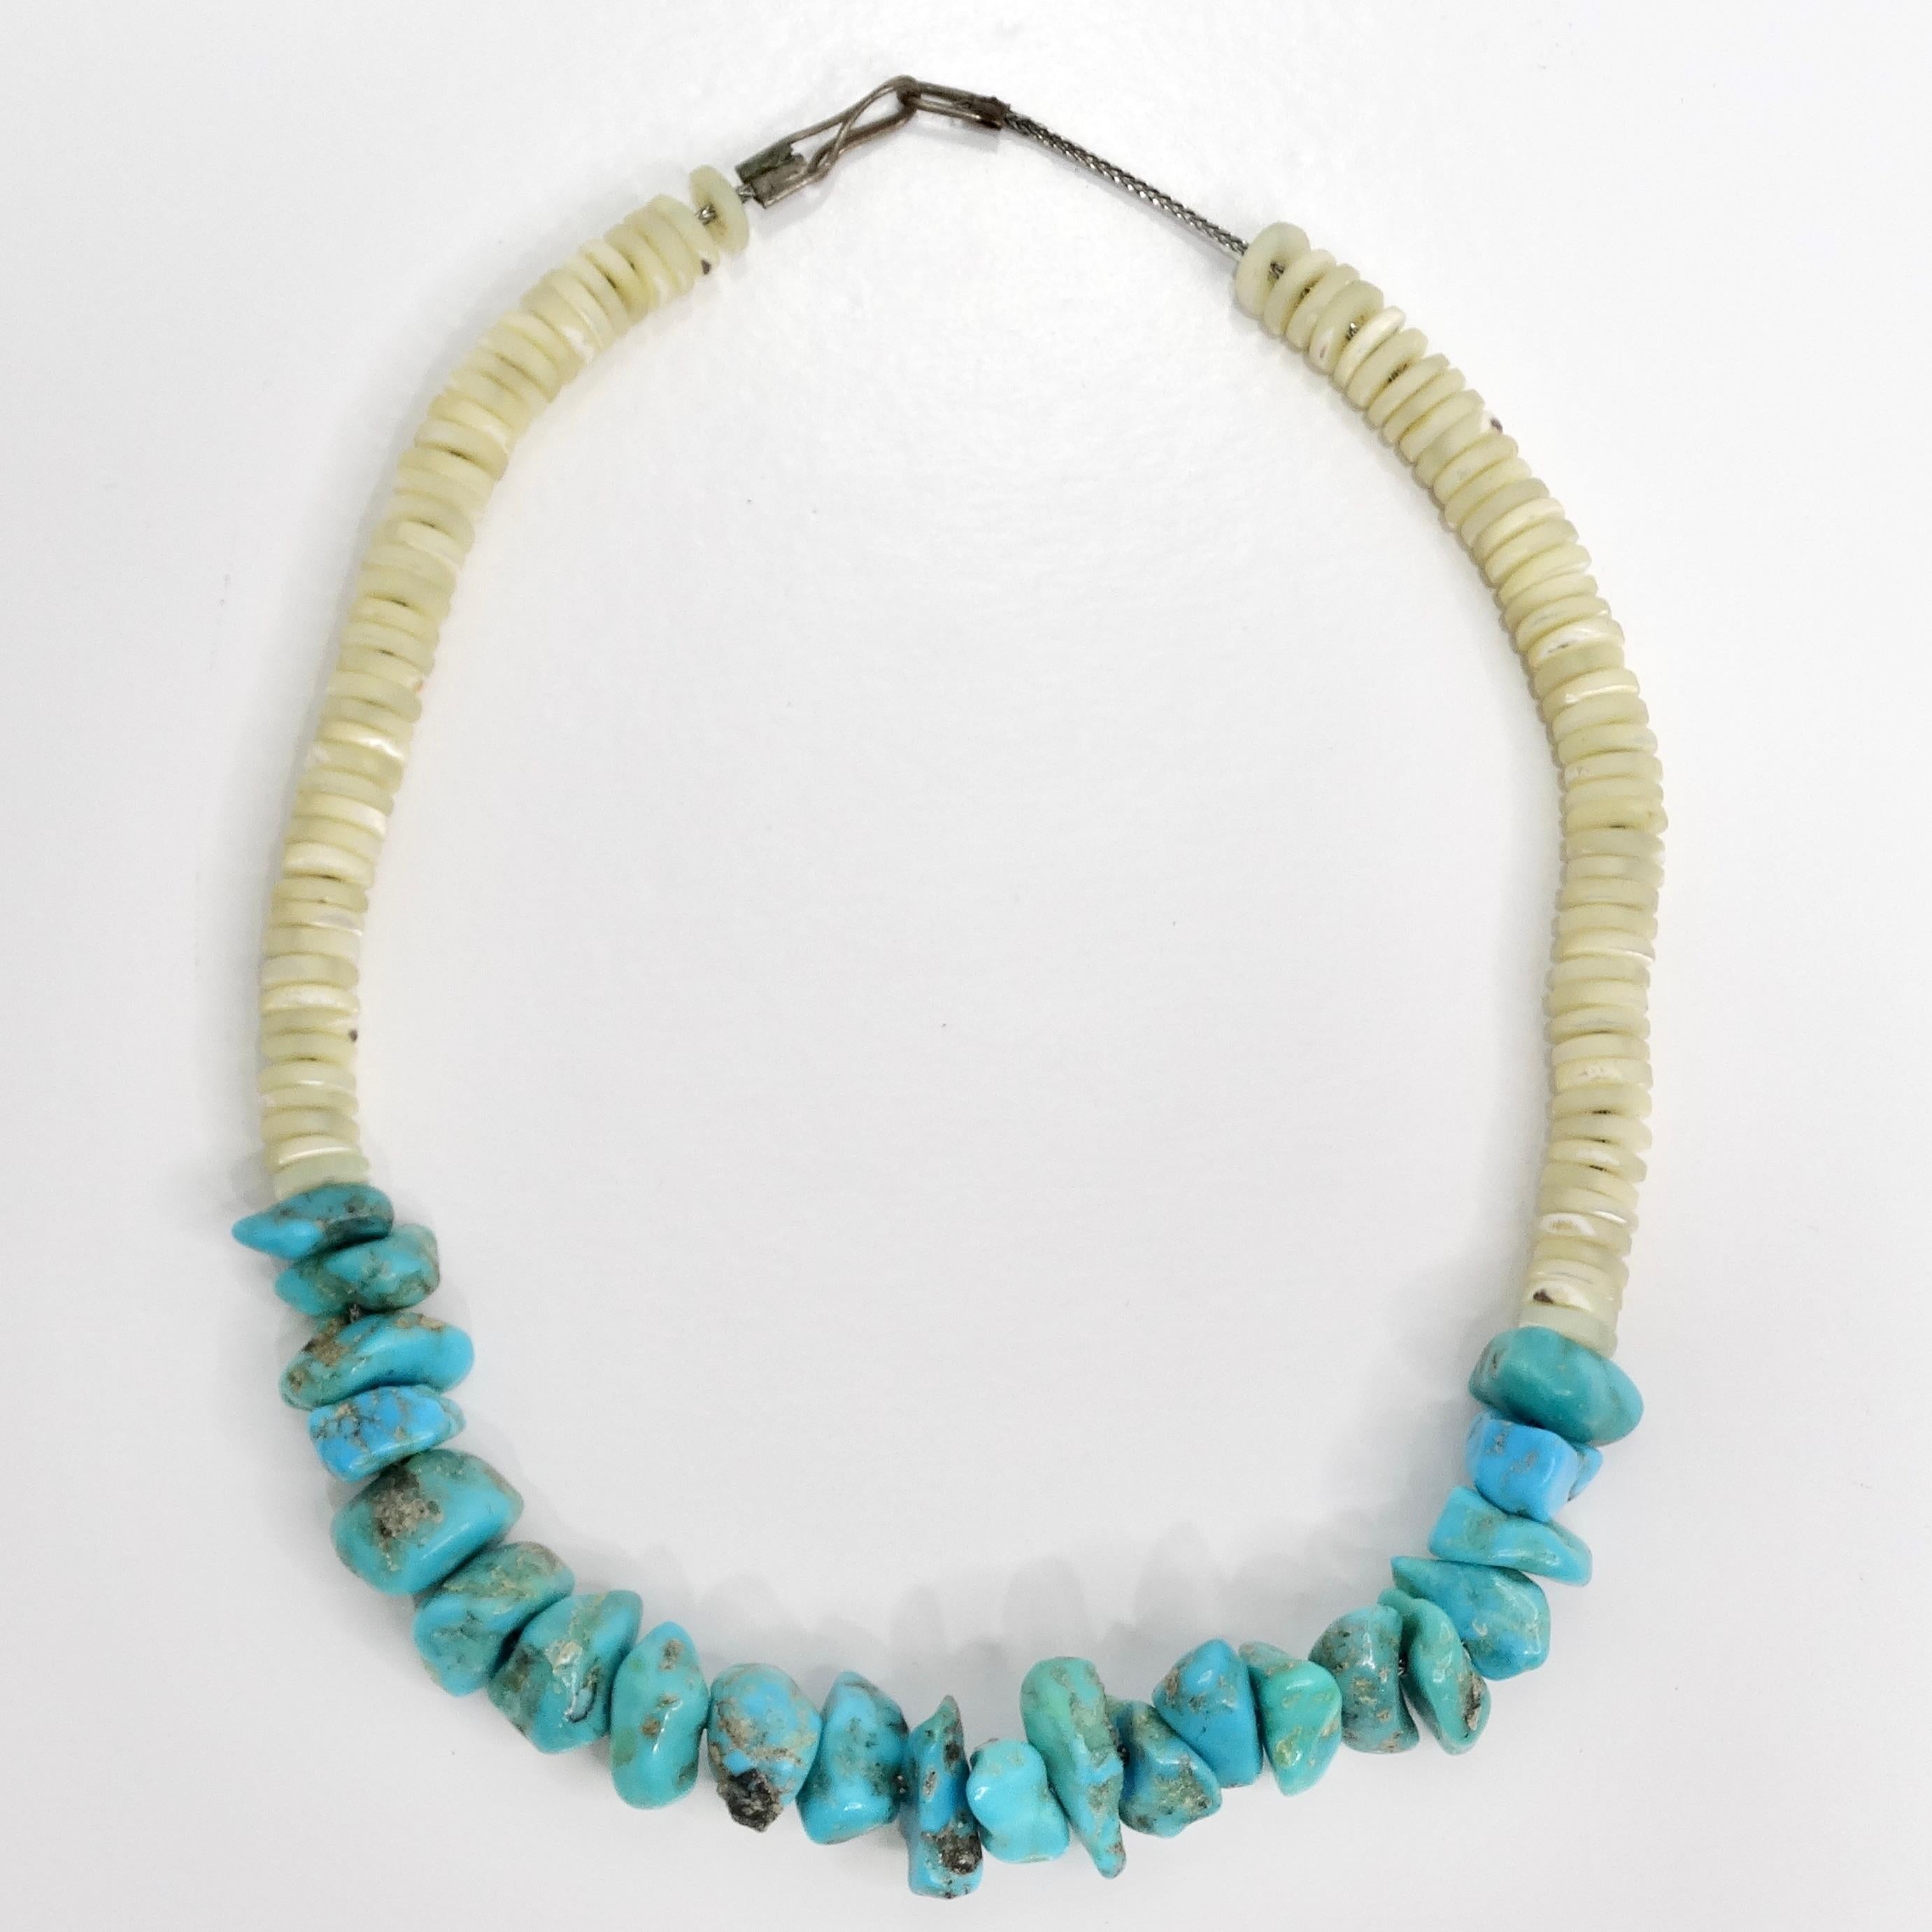 Die Navajo Muschelhalskette aus den 1960er Jahren ist ein zeitloses Vintage-Stück, das die reiche Tradition und Handwerkskunst der Navajo-Schmuckstücke widerspiegelt. Dieses wunderschöne Halsband besticht durch die Kombination von leuchtend blauen